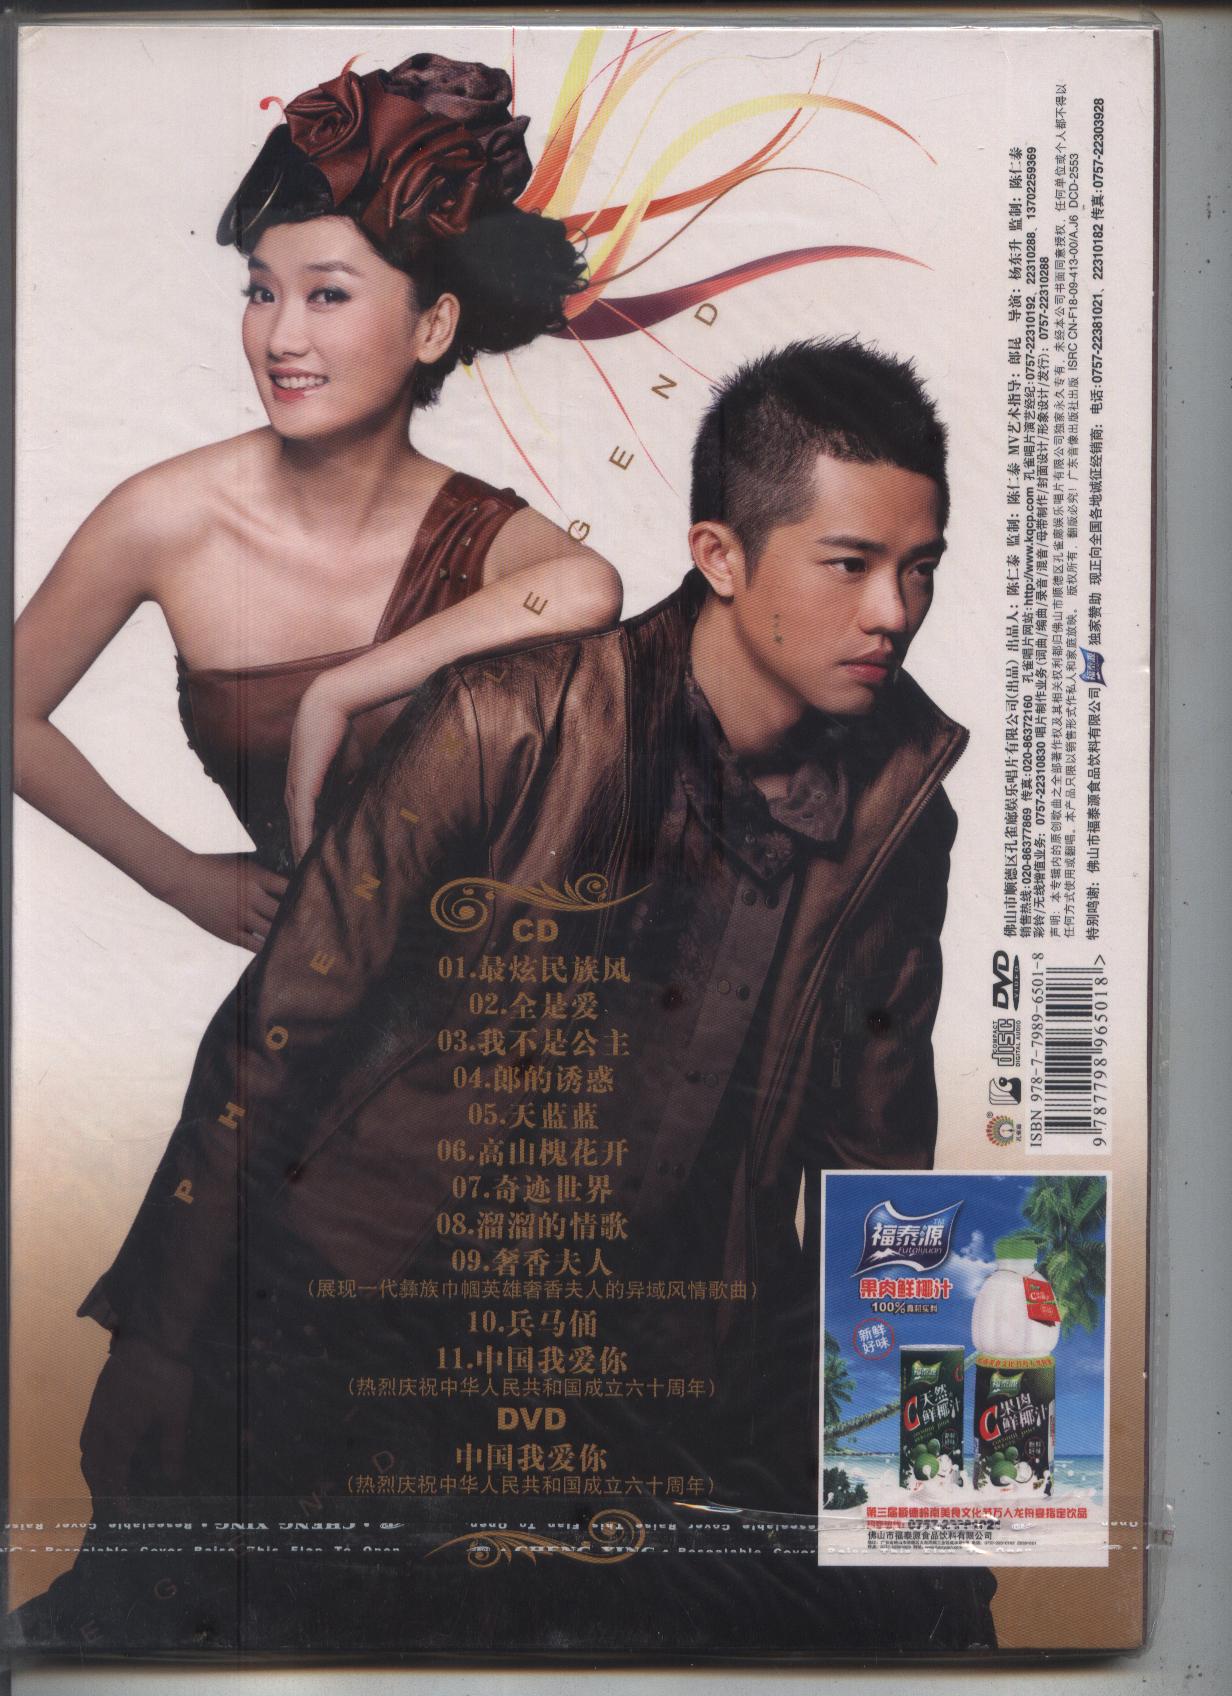 凤凰传奇炫民族风2009全是爱孔雀廊cddvd随碟附赠海报